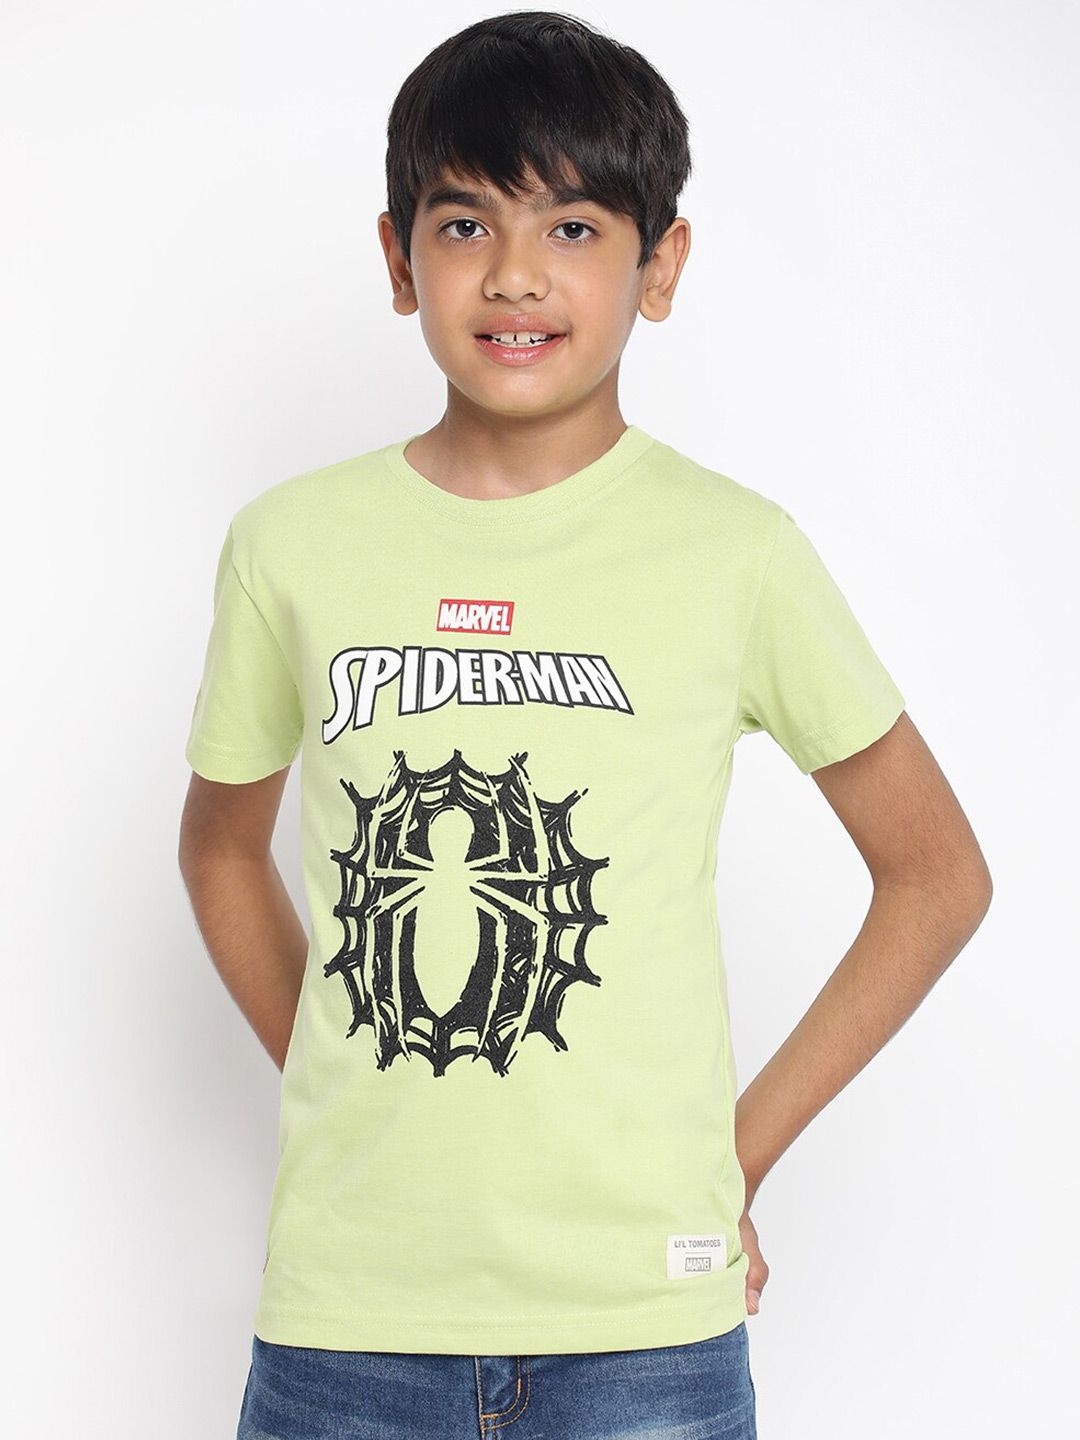 karakterisere Mountaineer lade Cotton superhero t shirts - Buy Cotton superhero t shirts online in India